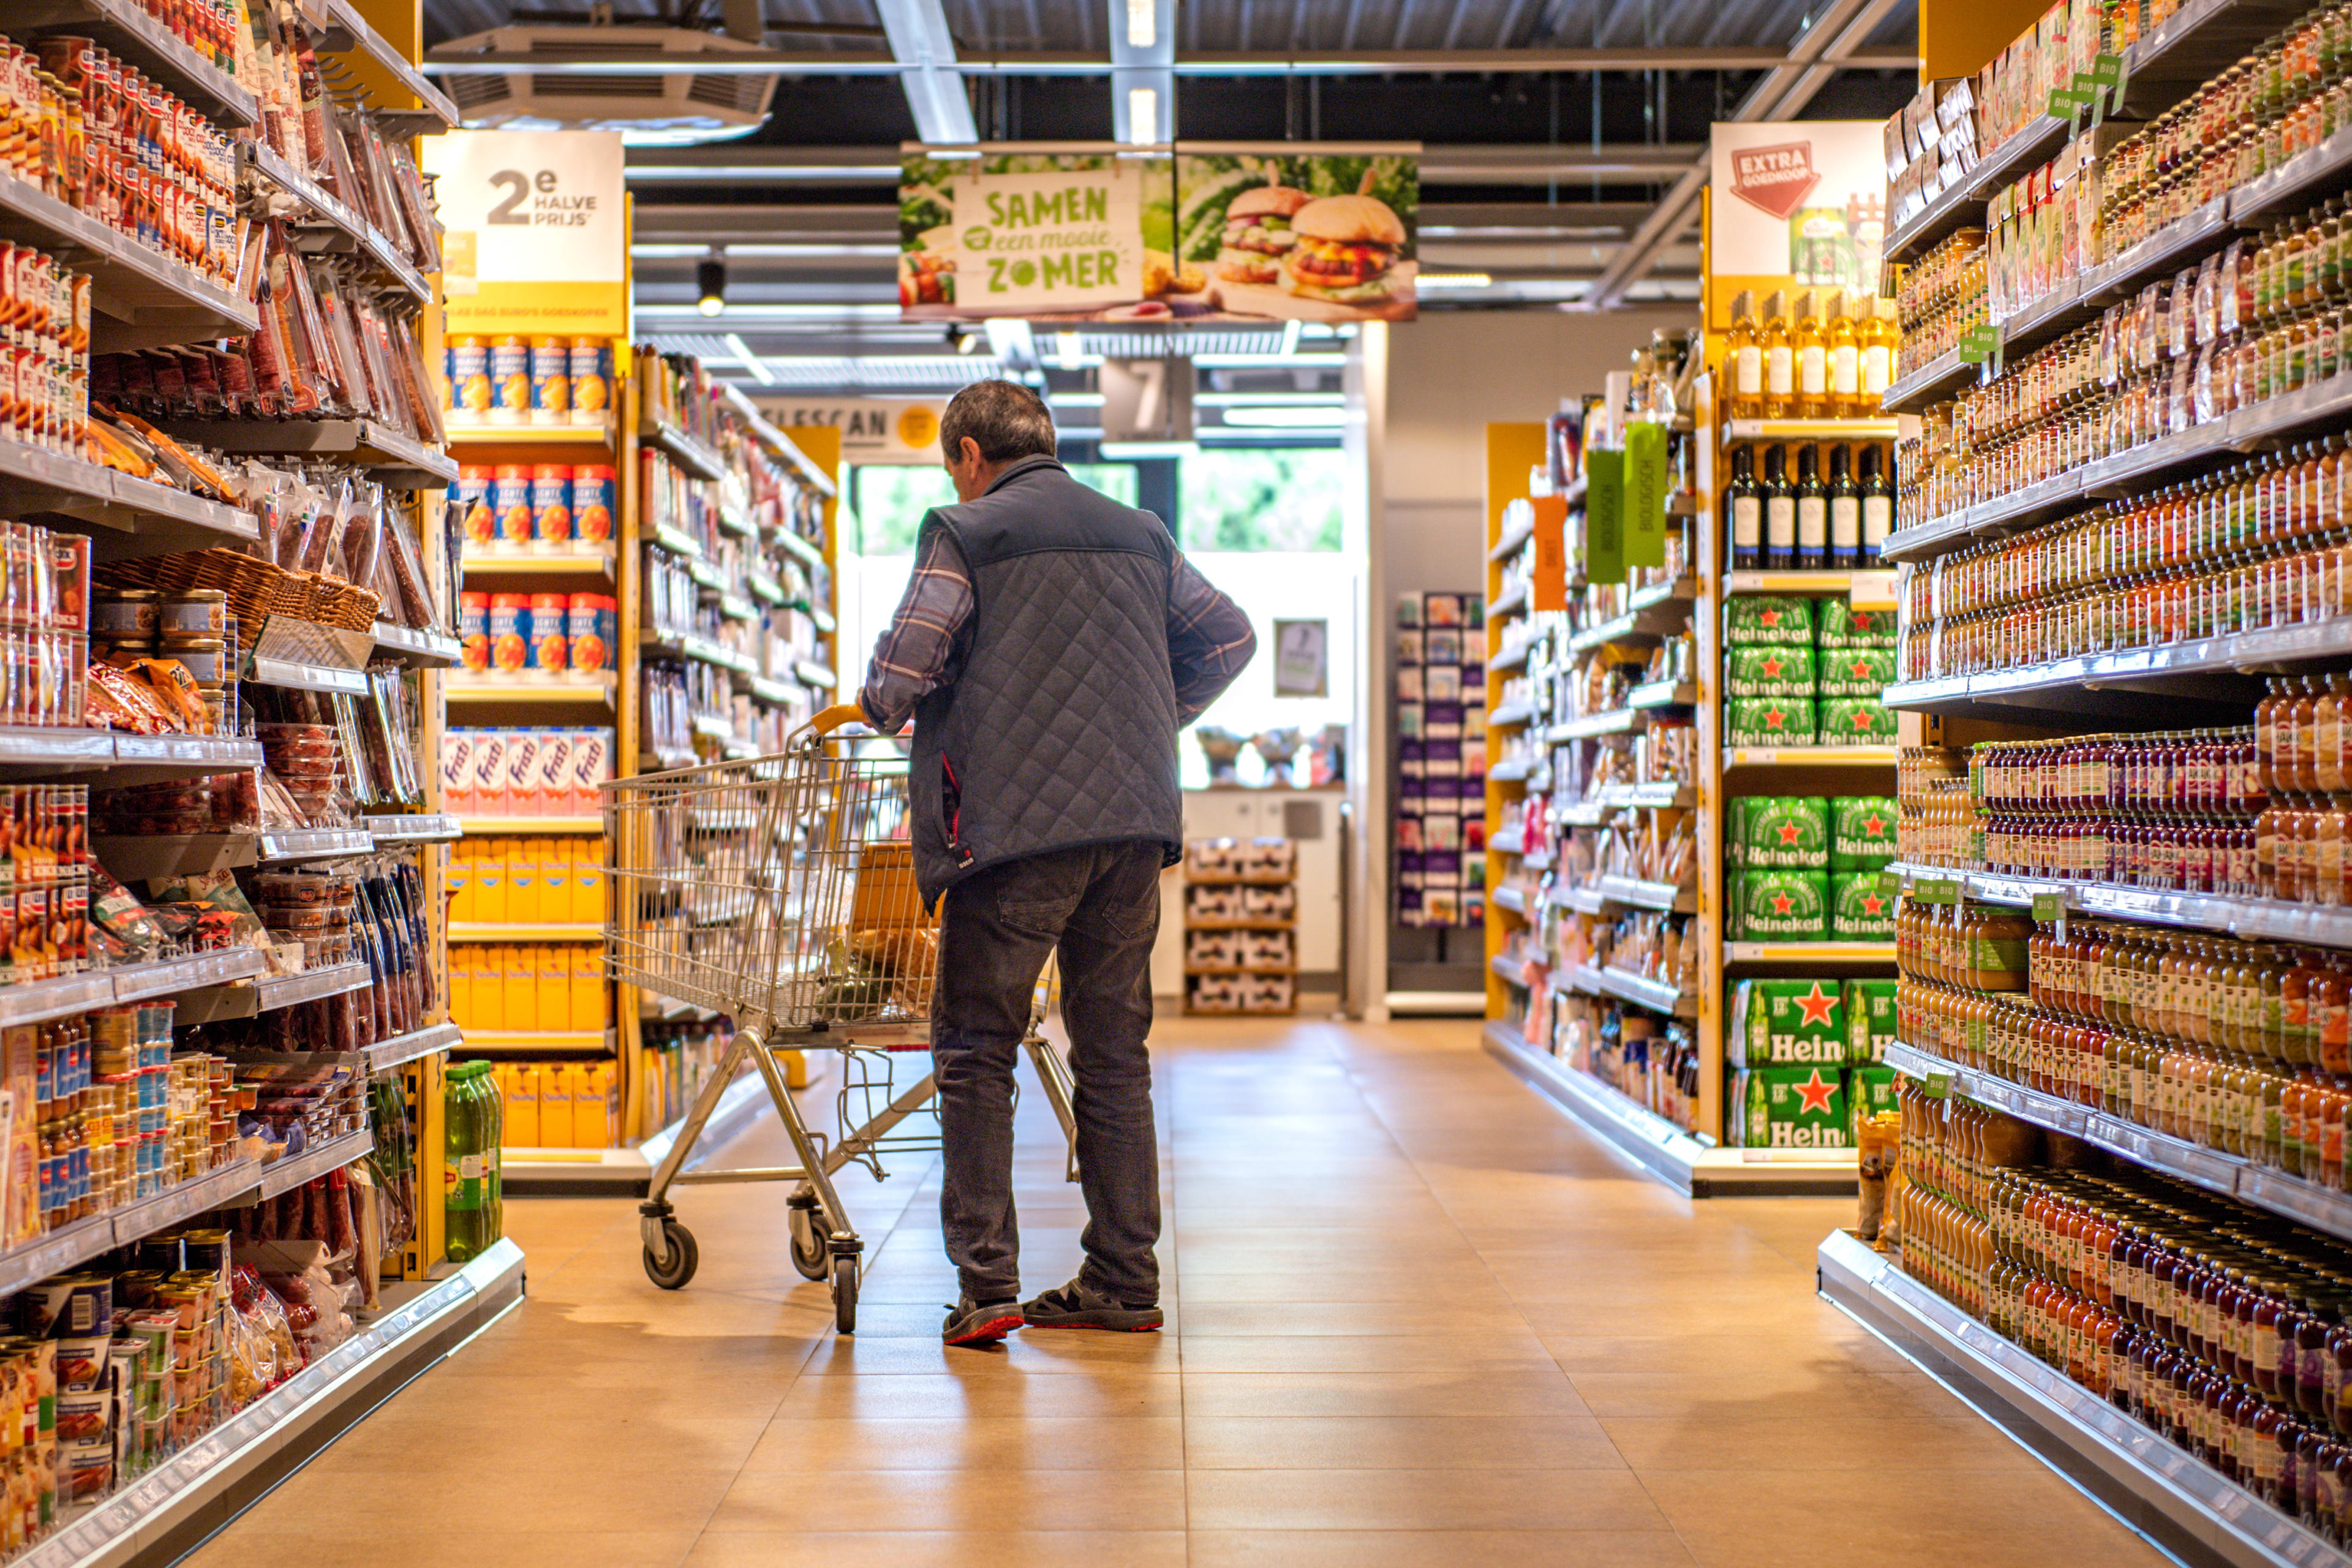 Bonnetje van jaren geleden toont hevige prijsstijgingen supermarkten aan